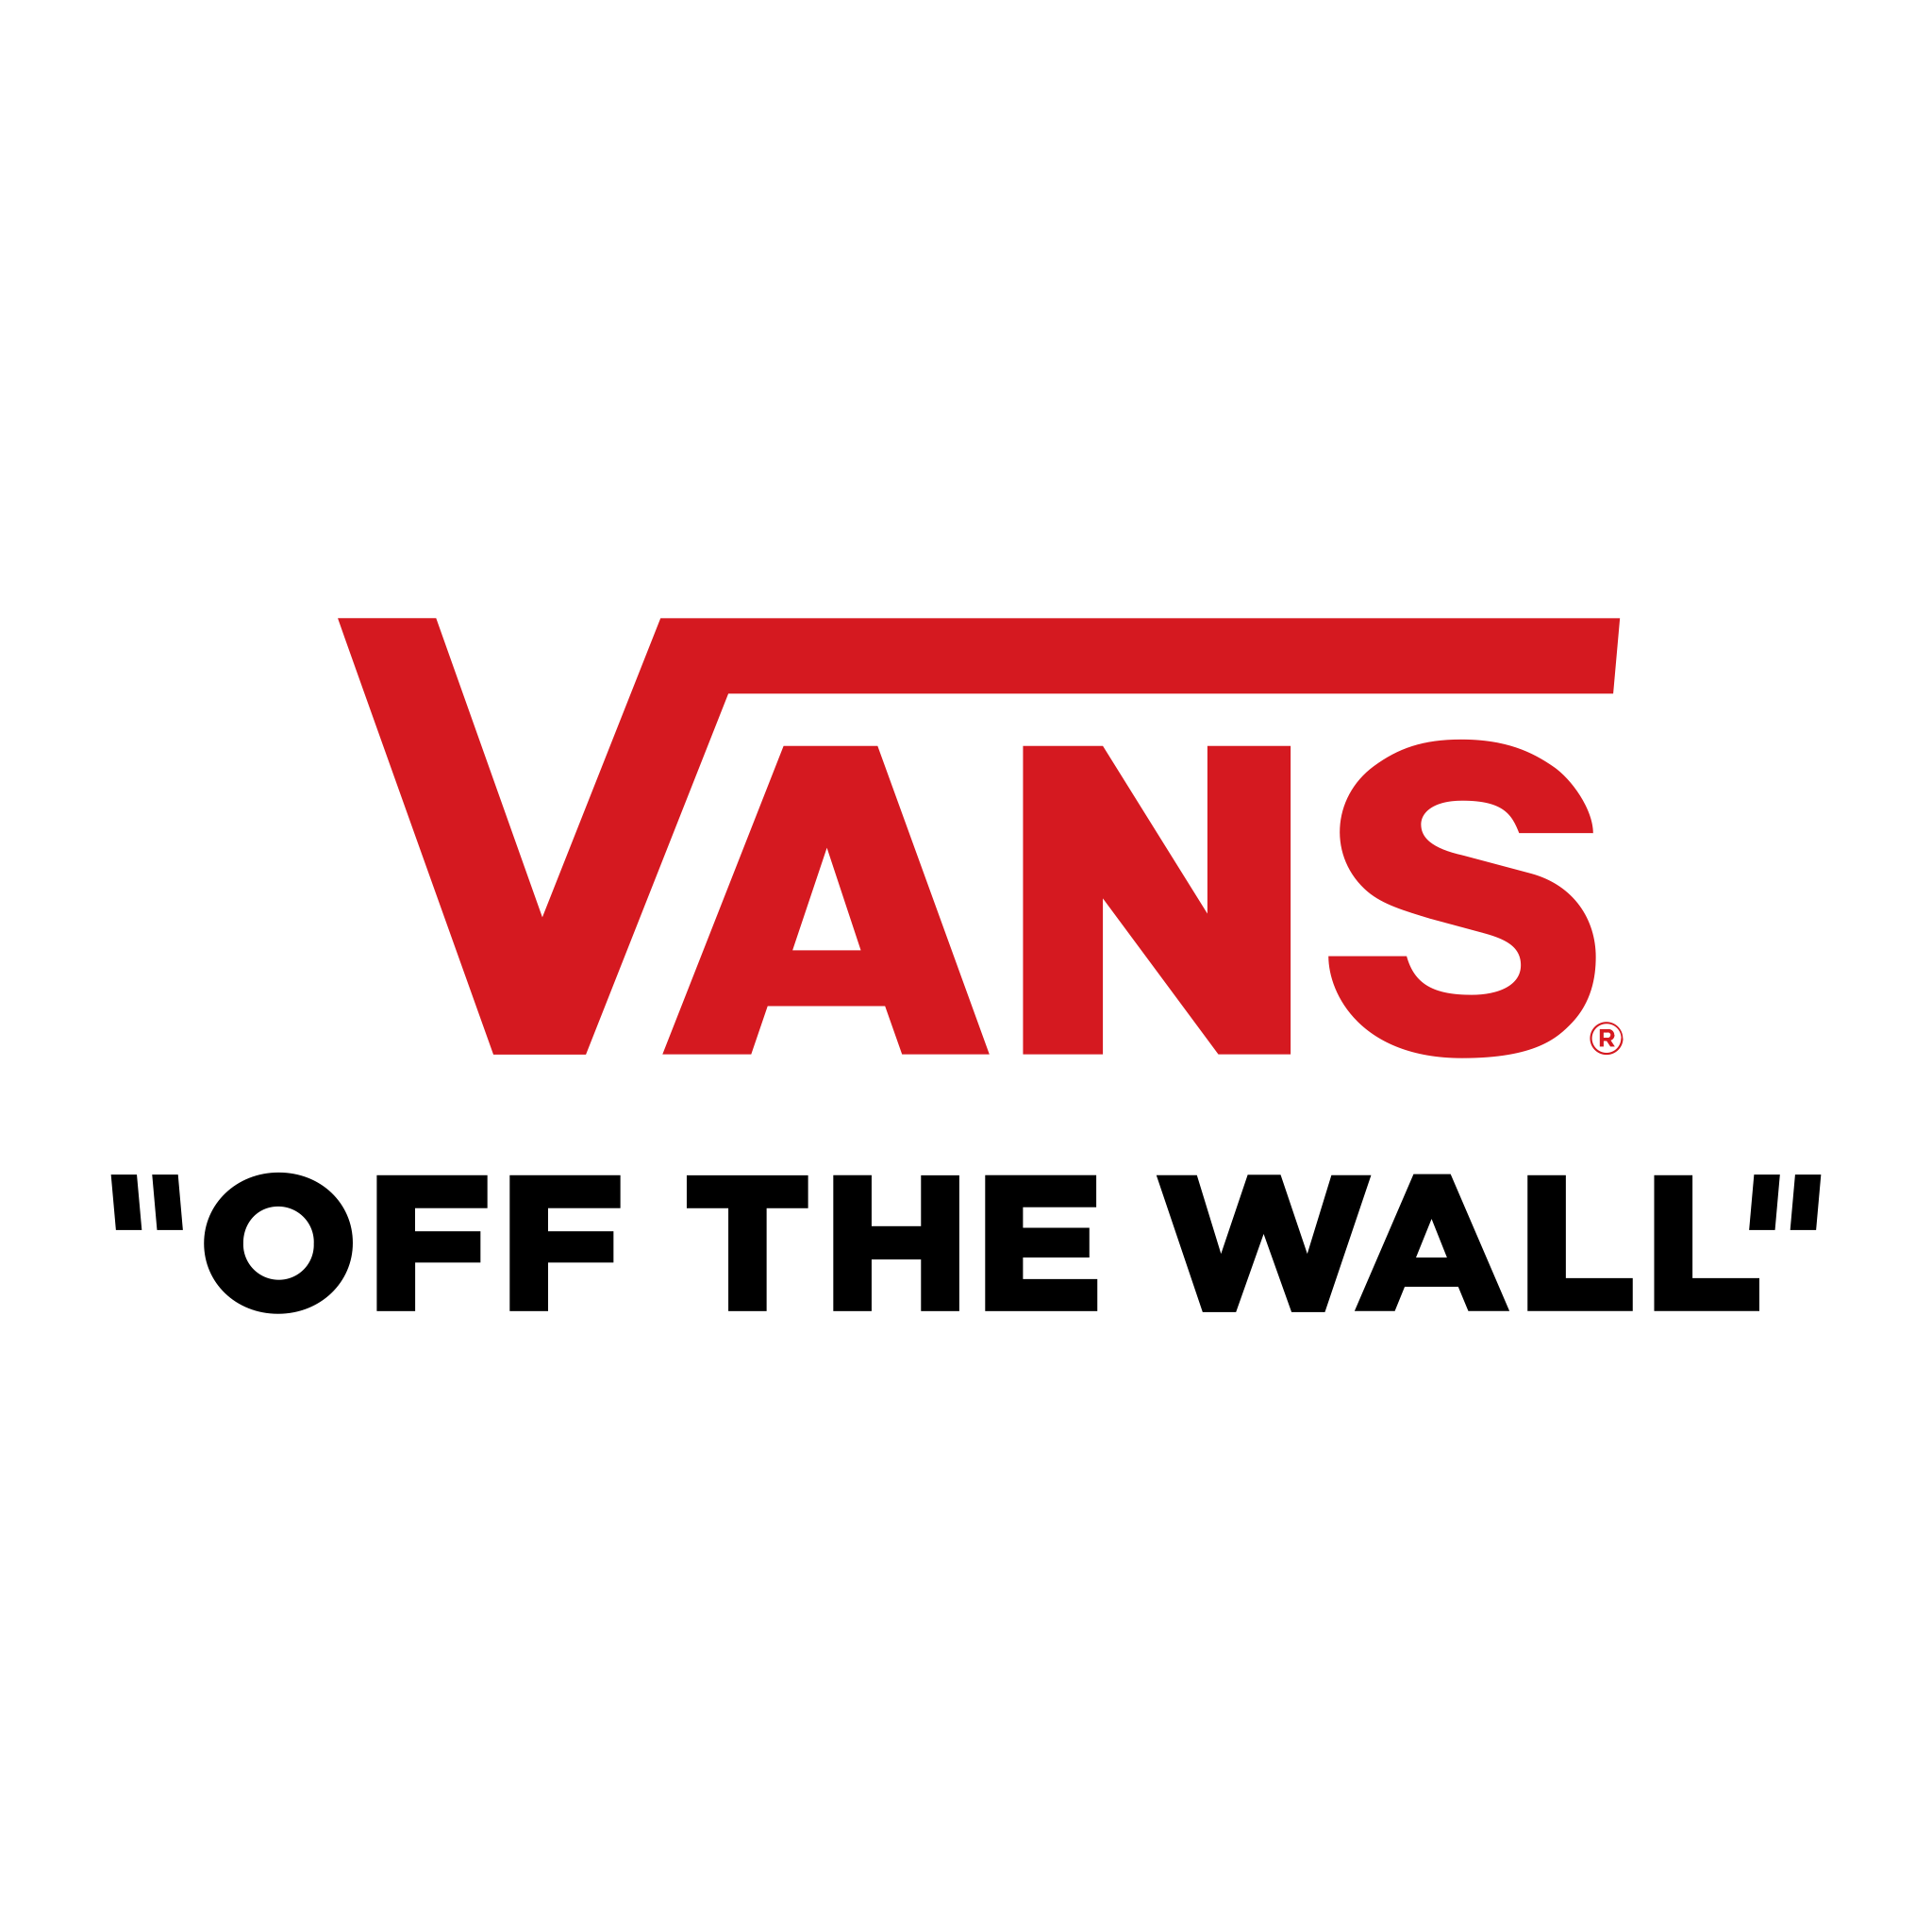 Logo de Vans SVG